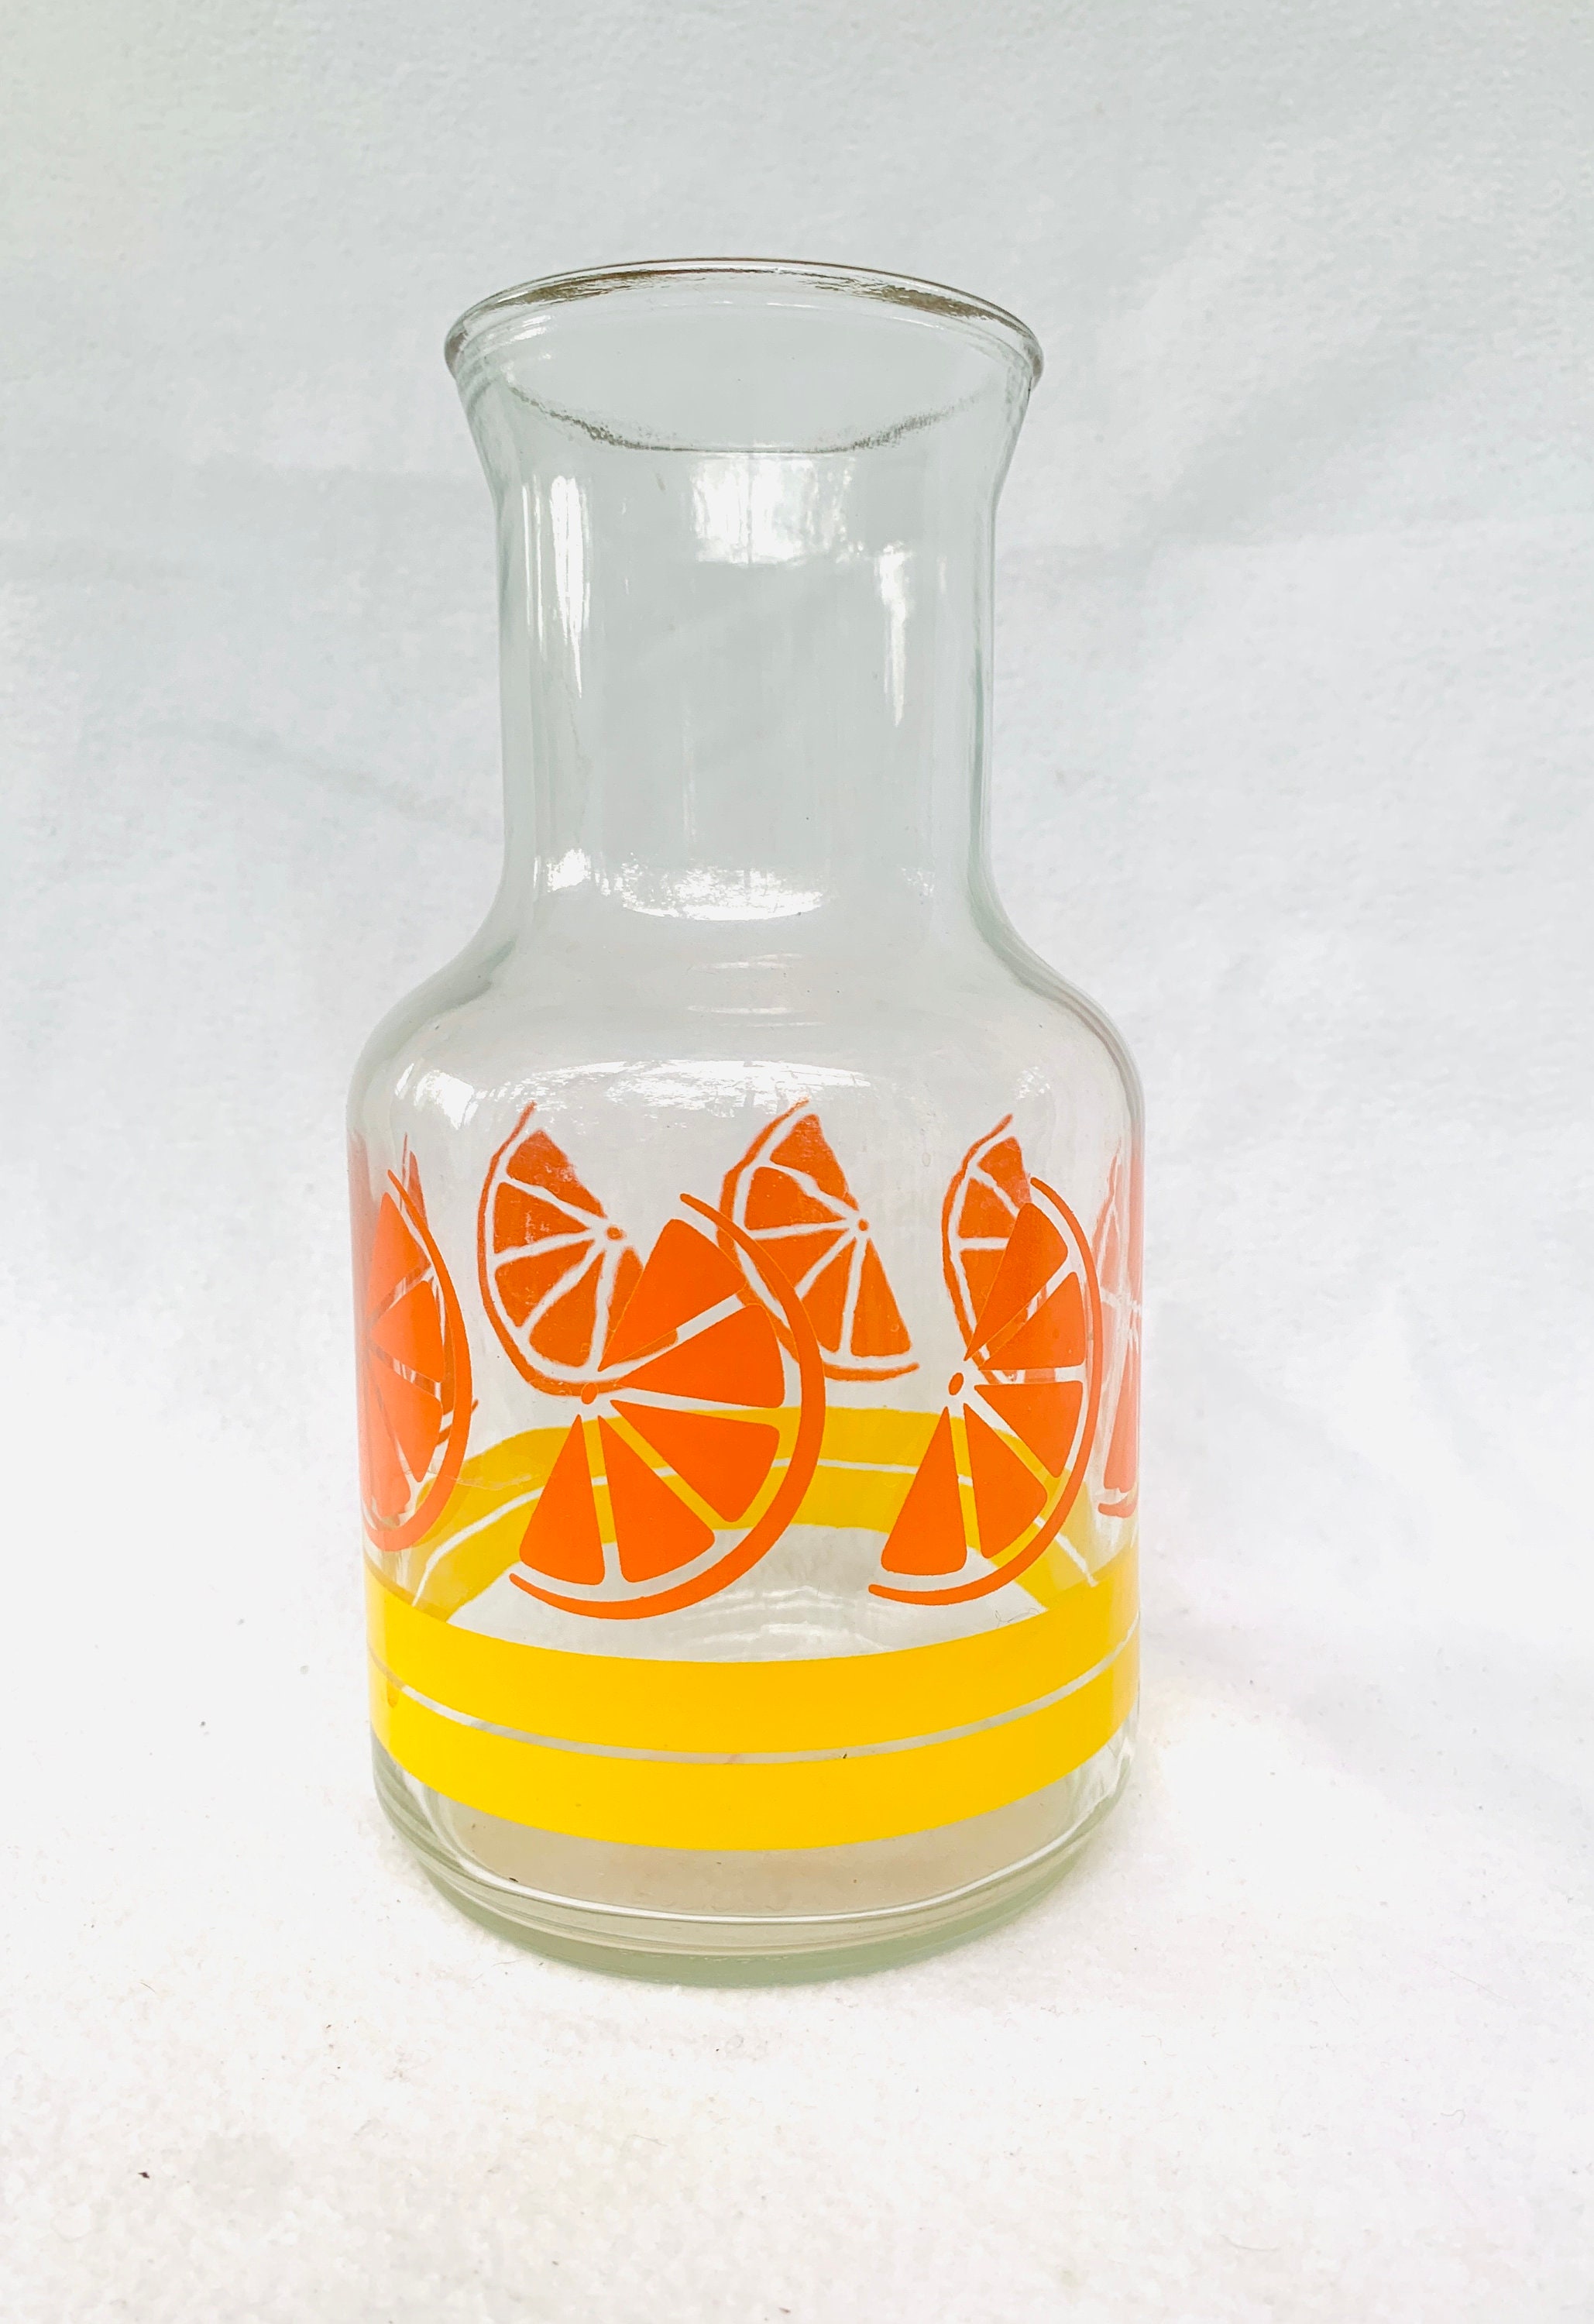 Orange Juice - Acrylic Carafe